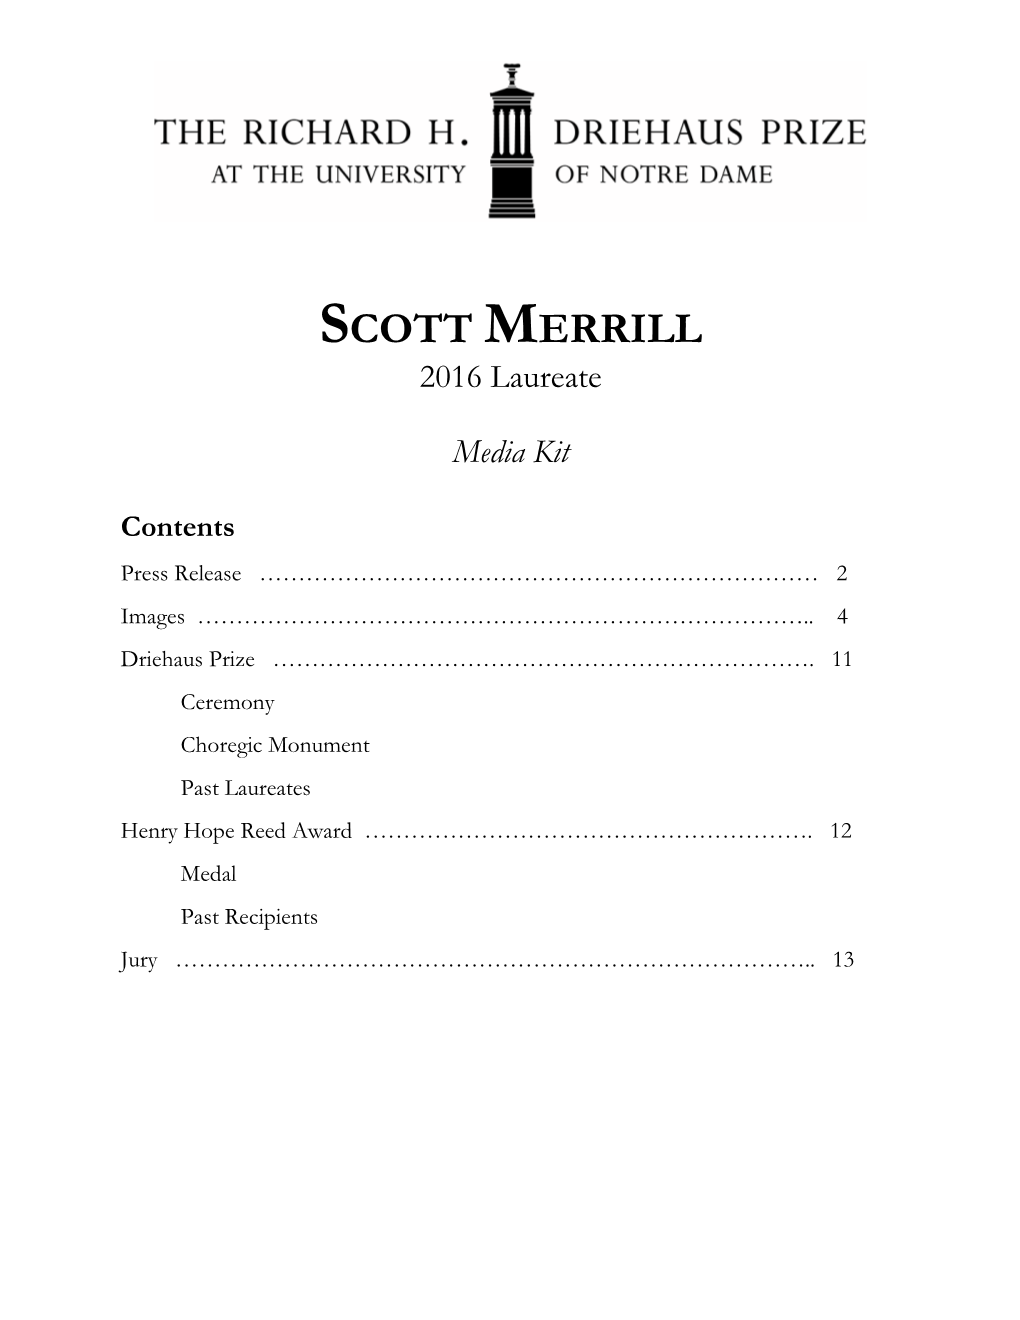 SCOTT MERRILL 2016 Laureate